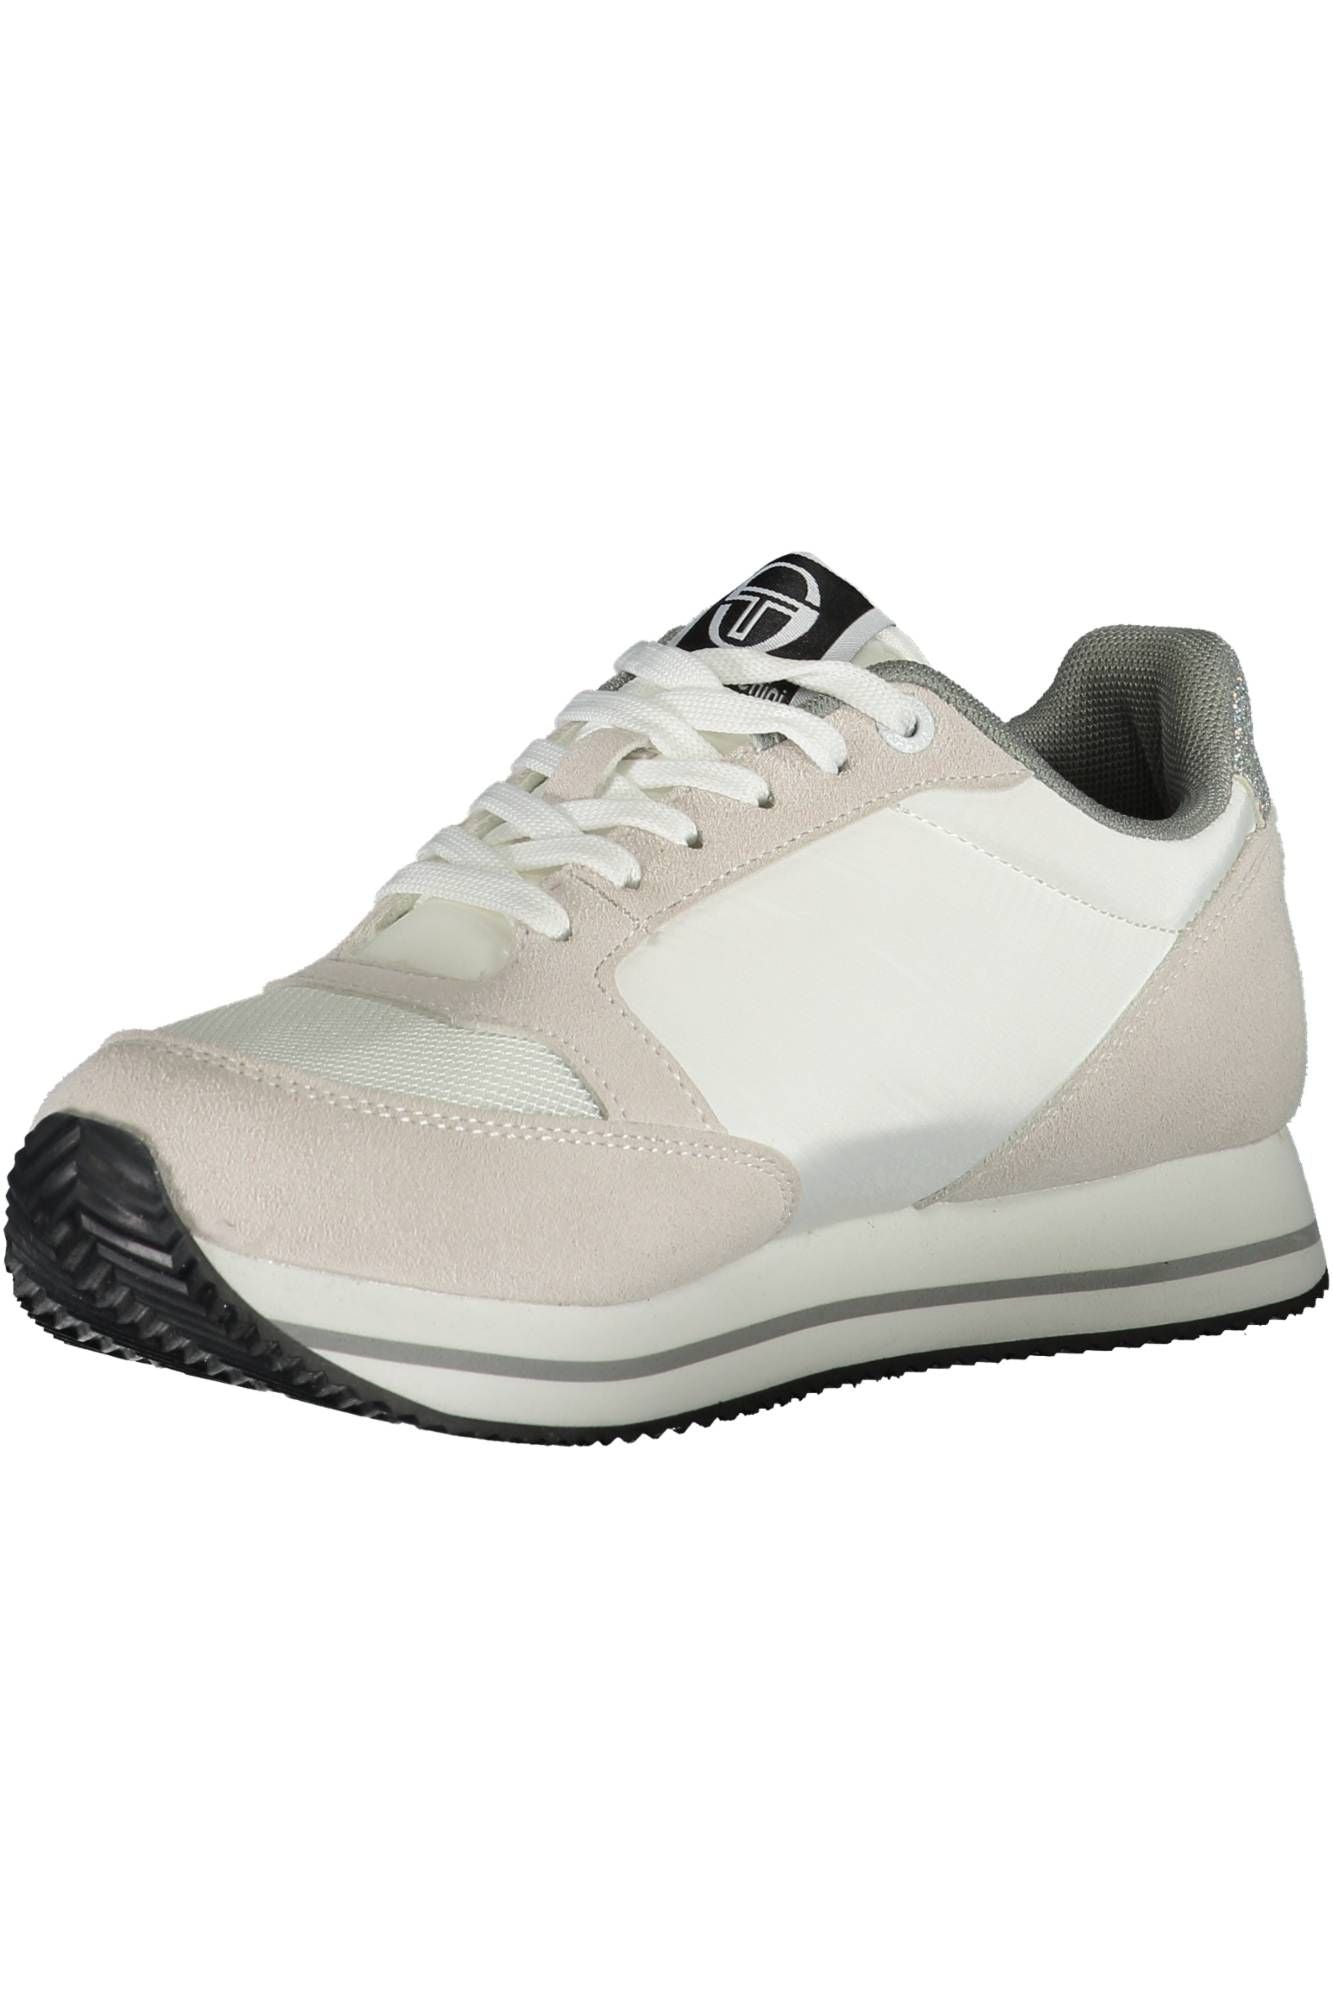 حذاء سيرجيو تاتشيني الرياضي باللون الأبيض الأنيق مع تفاصيل متباينة